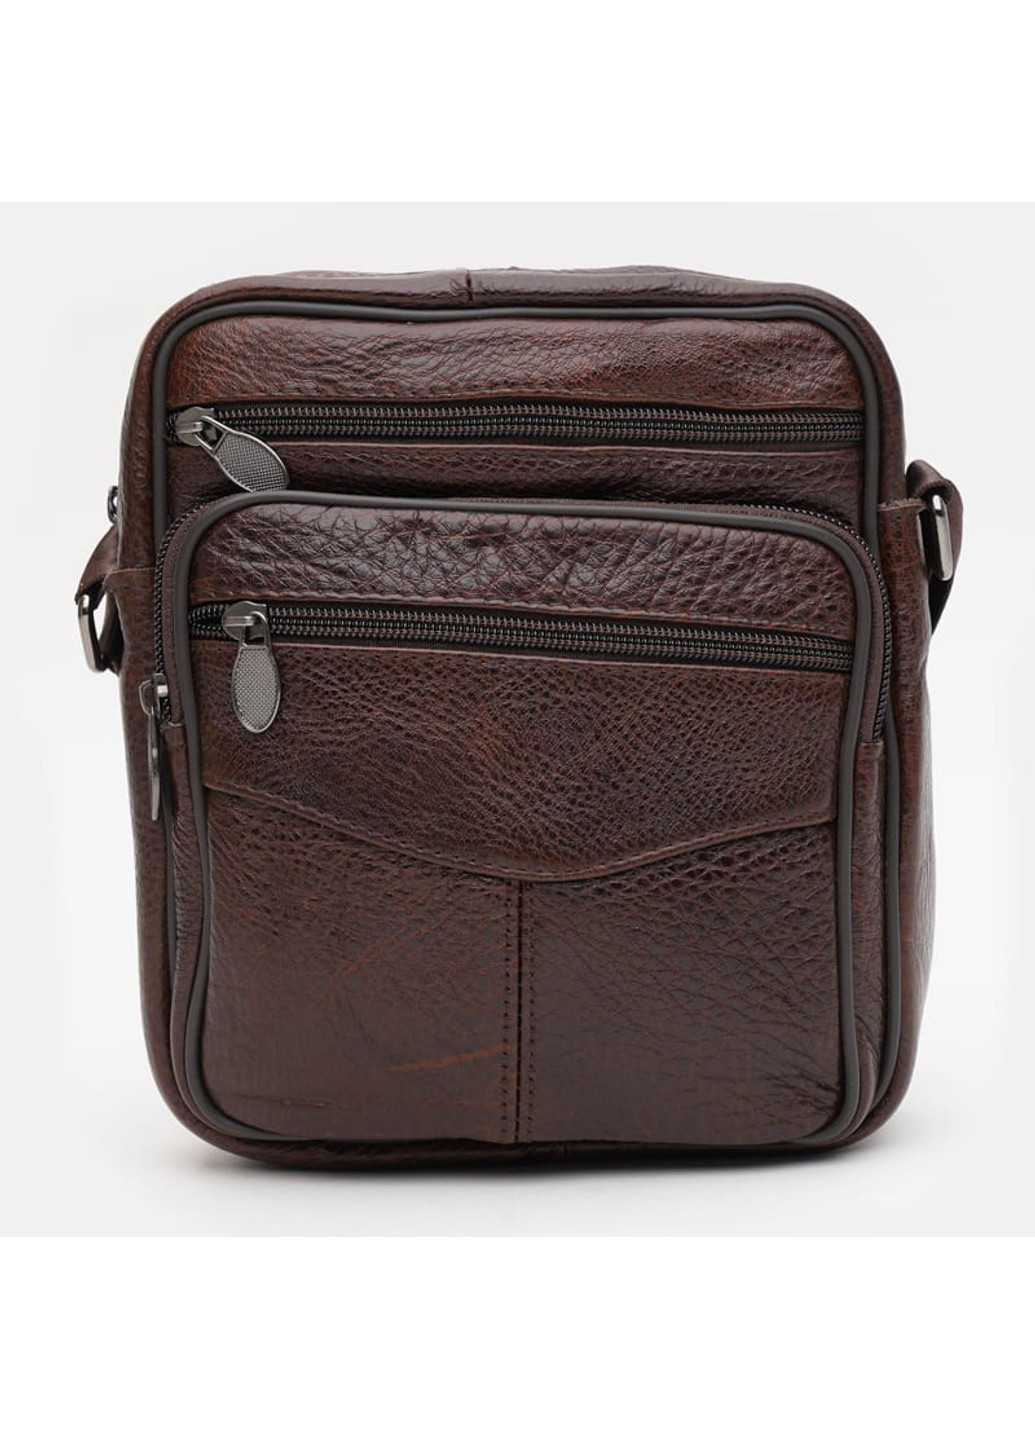 Мужская кожаная сумка K19970br-brown Keizer (266143507)